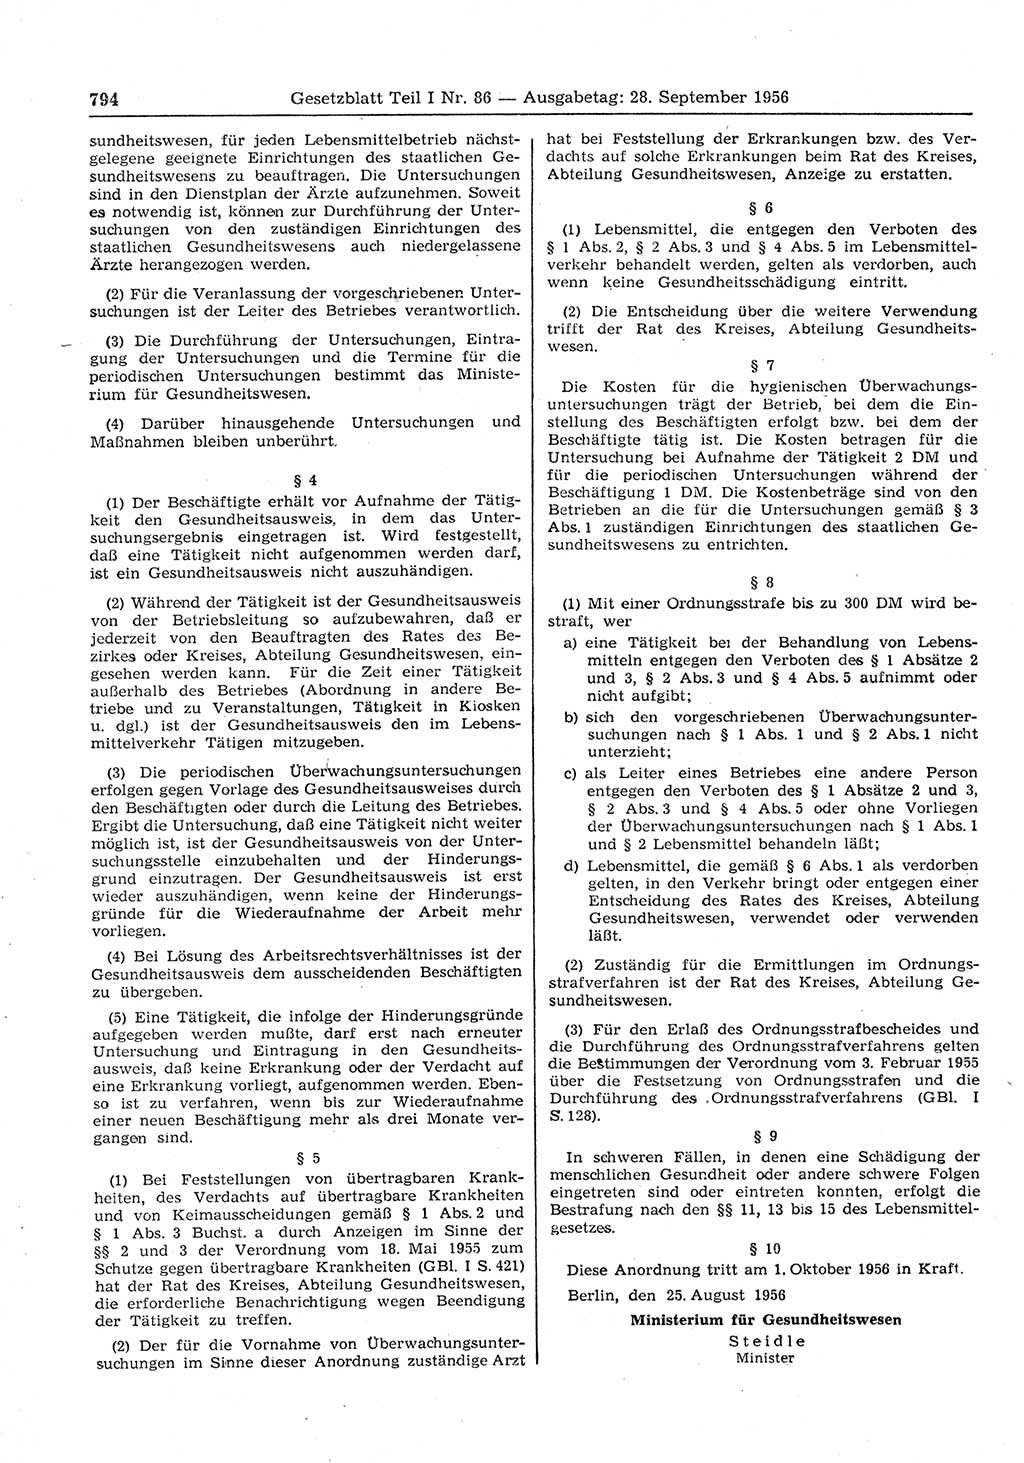 Gesetzblatt (GBl.) der Deutschen Demokratischen Republik (DDR) Teil Ⅰ 1956, Seite 794 (GBl. DDR Ⅰ 1956, S. 794)